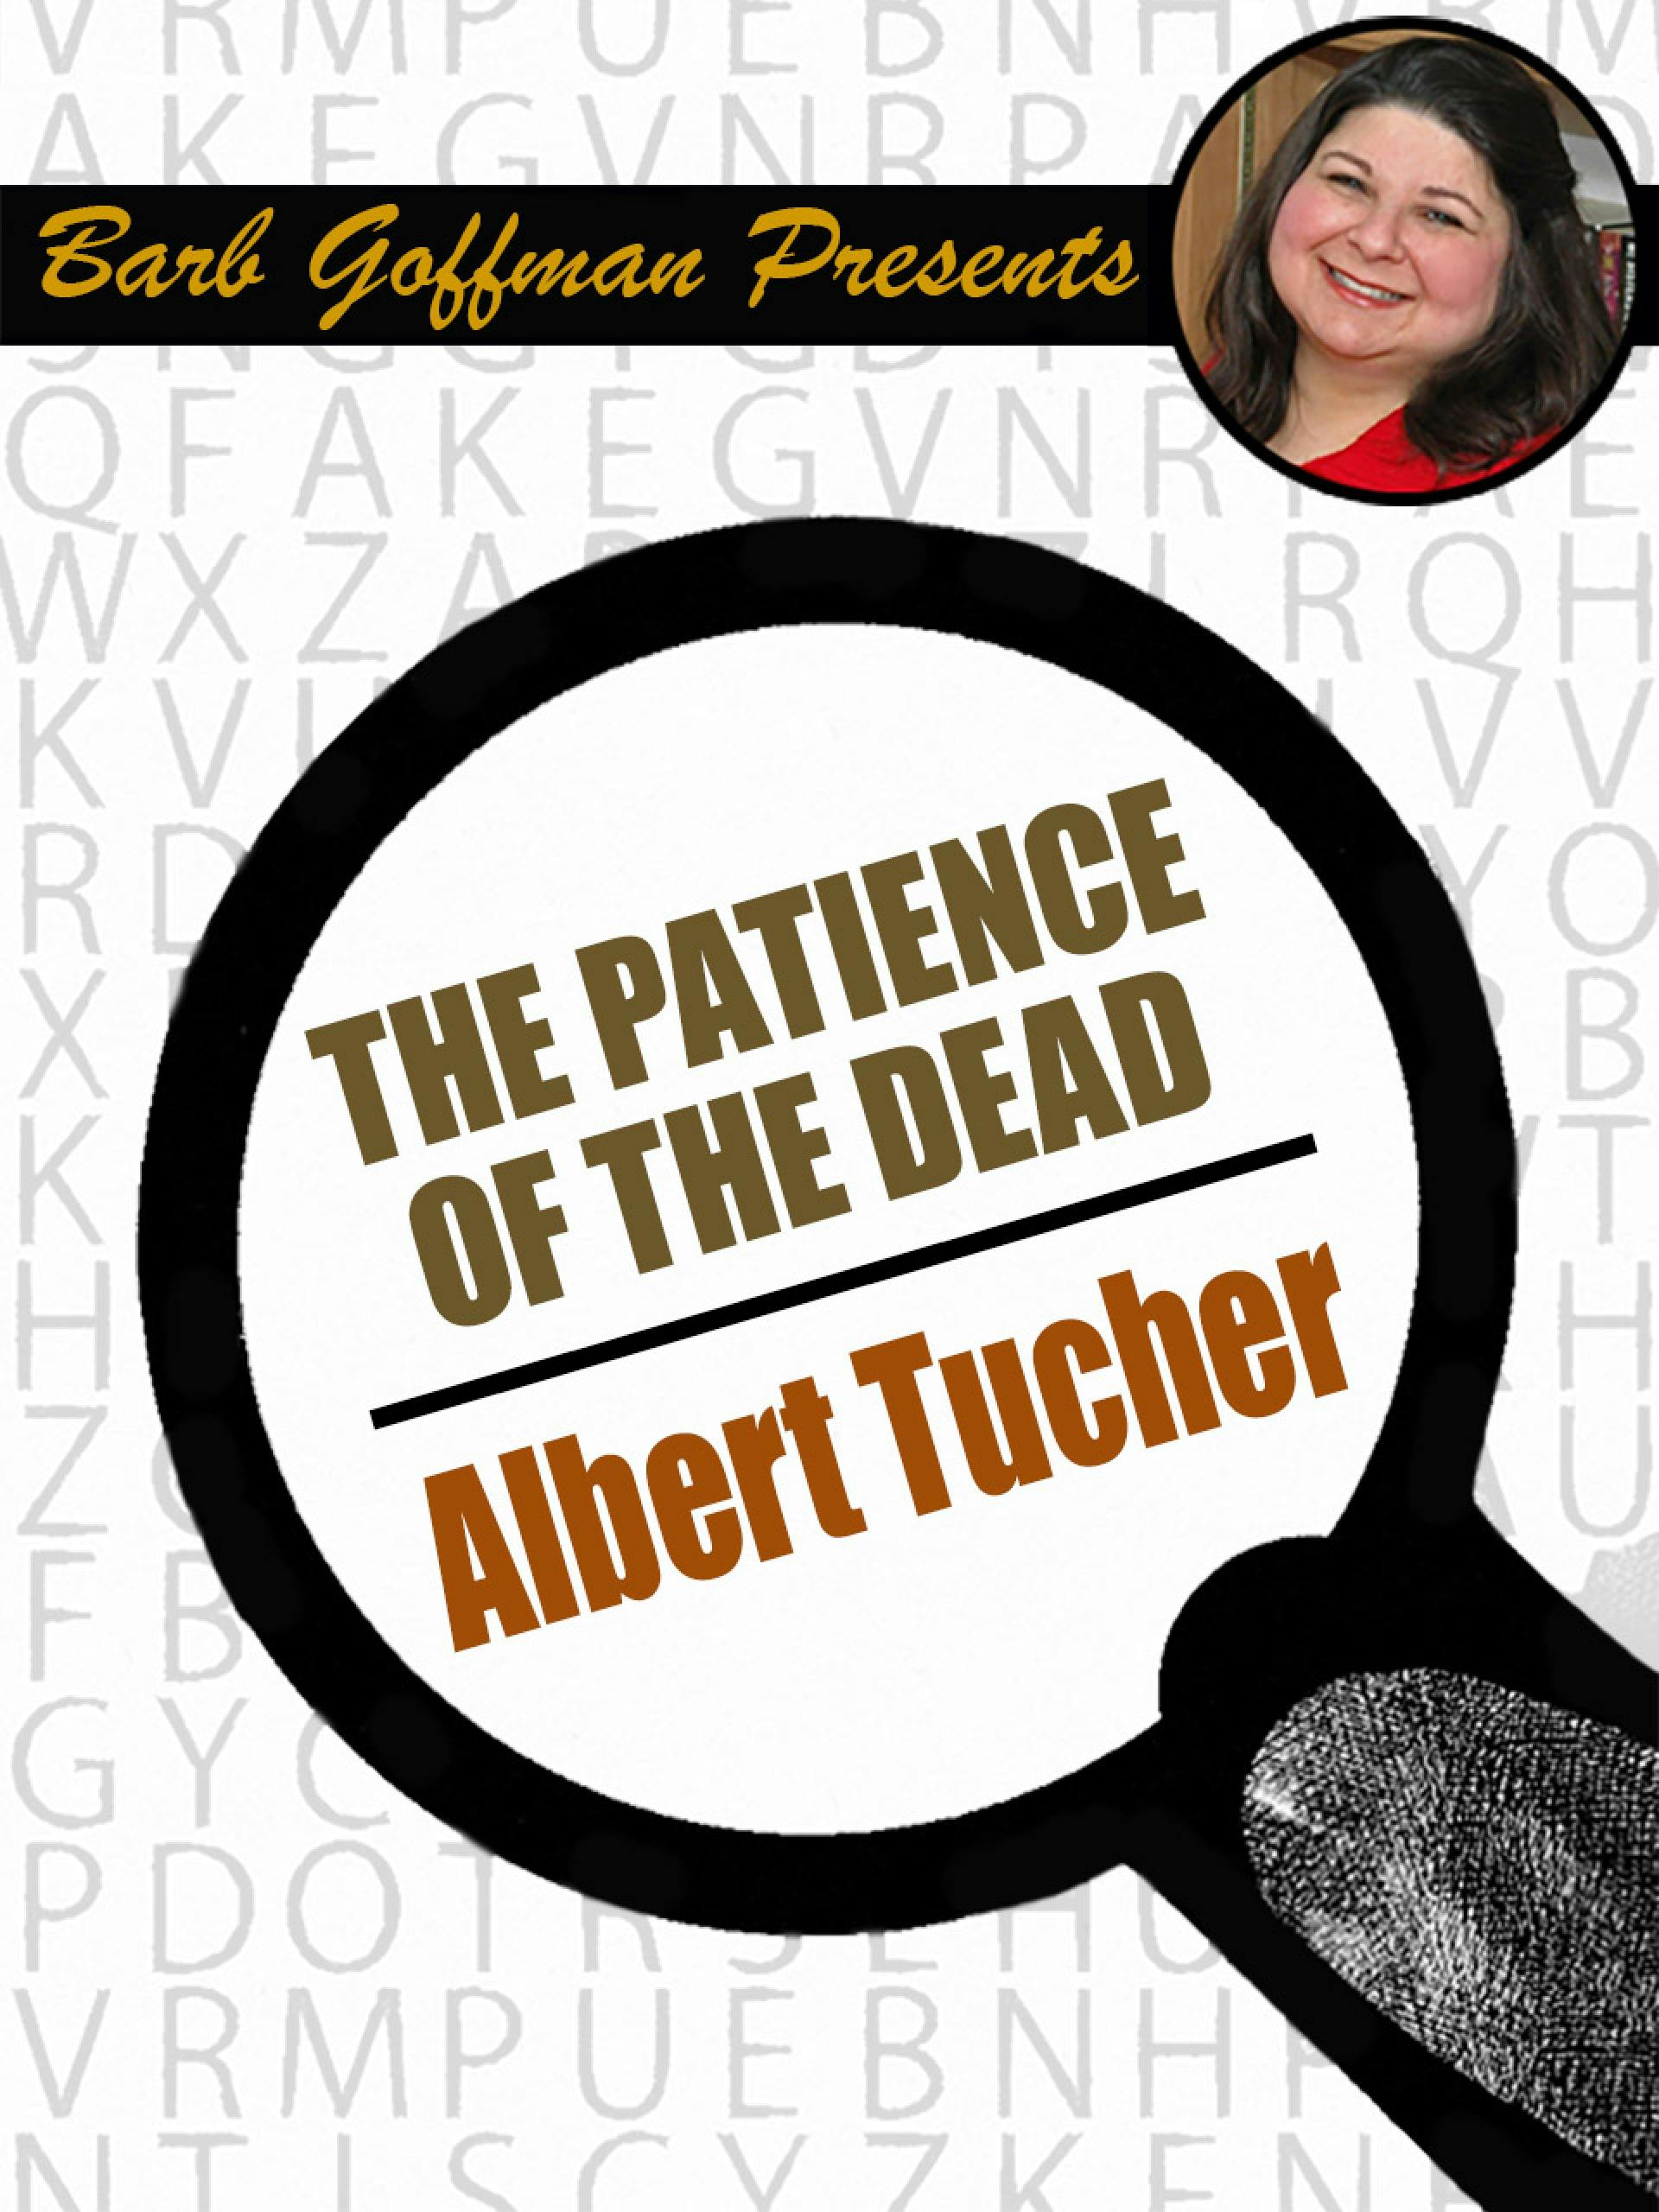 Patience of the Dead - Albert Tucher